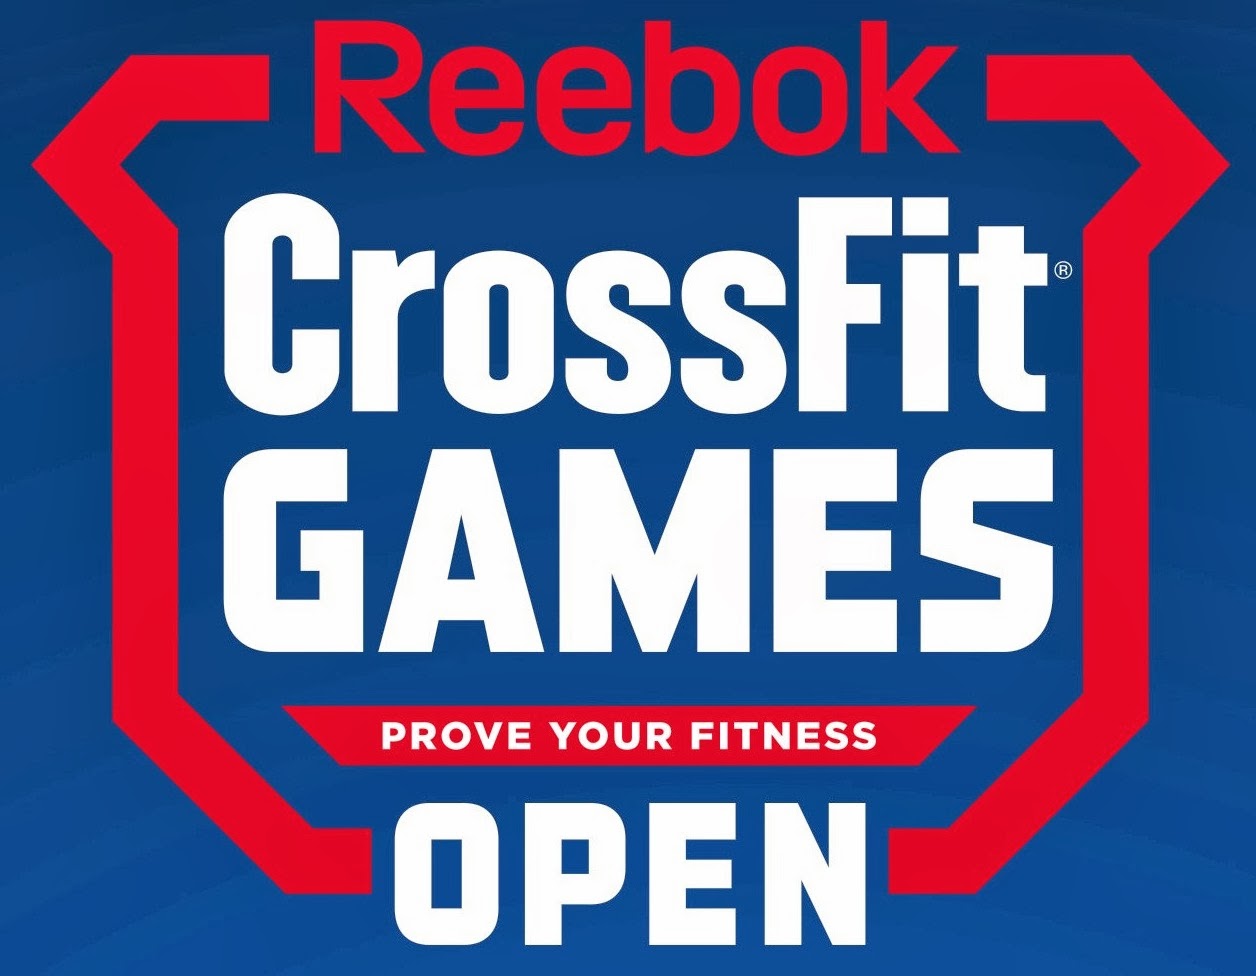 reebok crossfit open games 2019